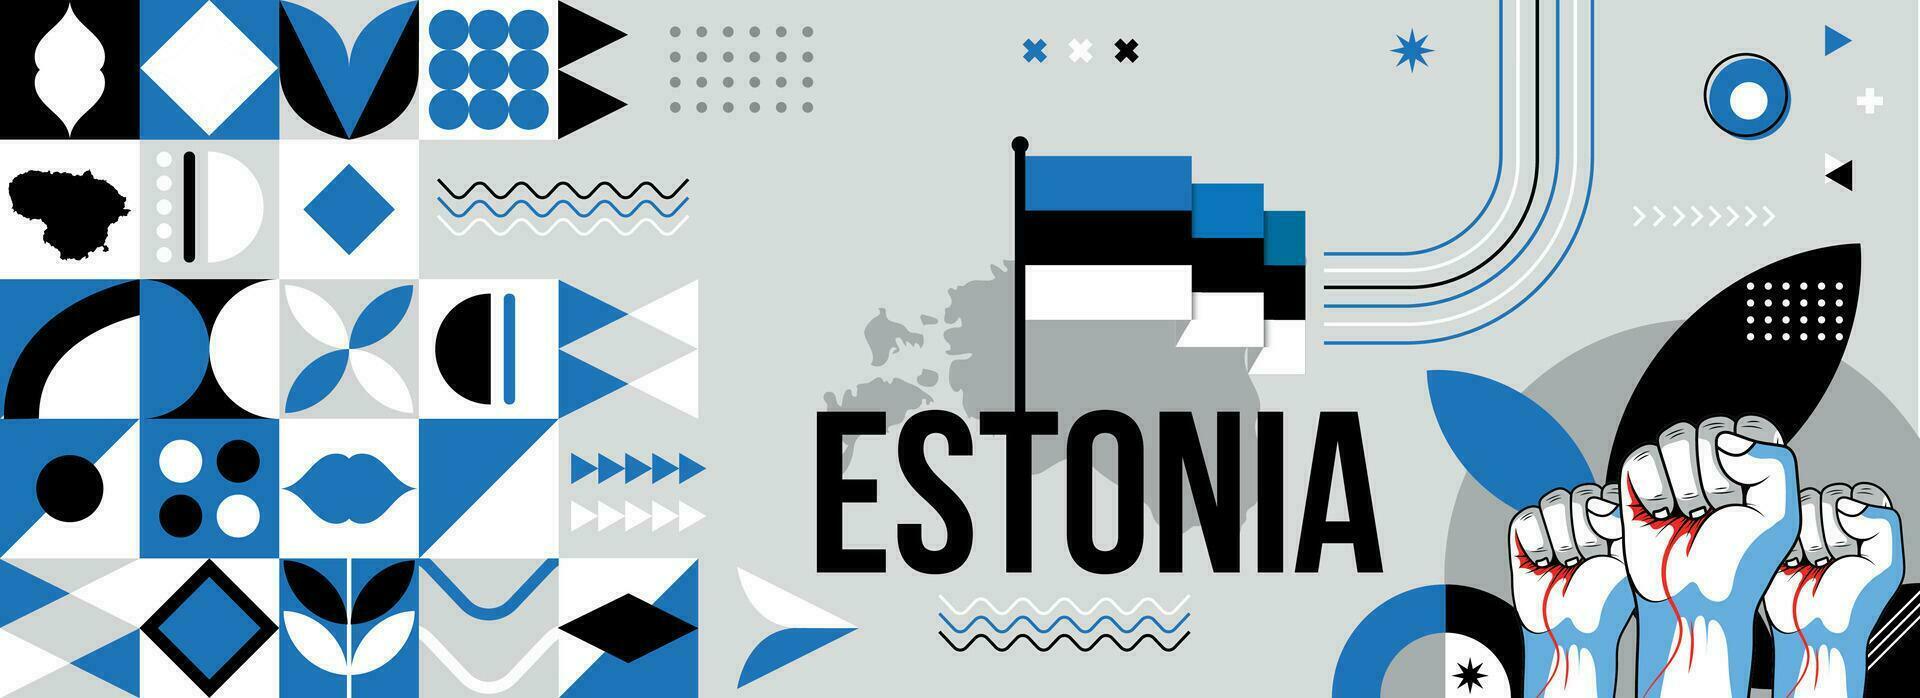 Estland National oder Unabhängigkeit Tag Banner zum Land Feier. Flagge und Karte von Estland mit angehoben Fäuste. modern retro Design mit Typorgaphie abstrakt geometrisch Symbole. Vektor Illustration.